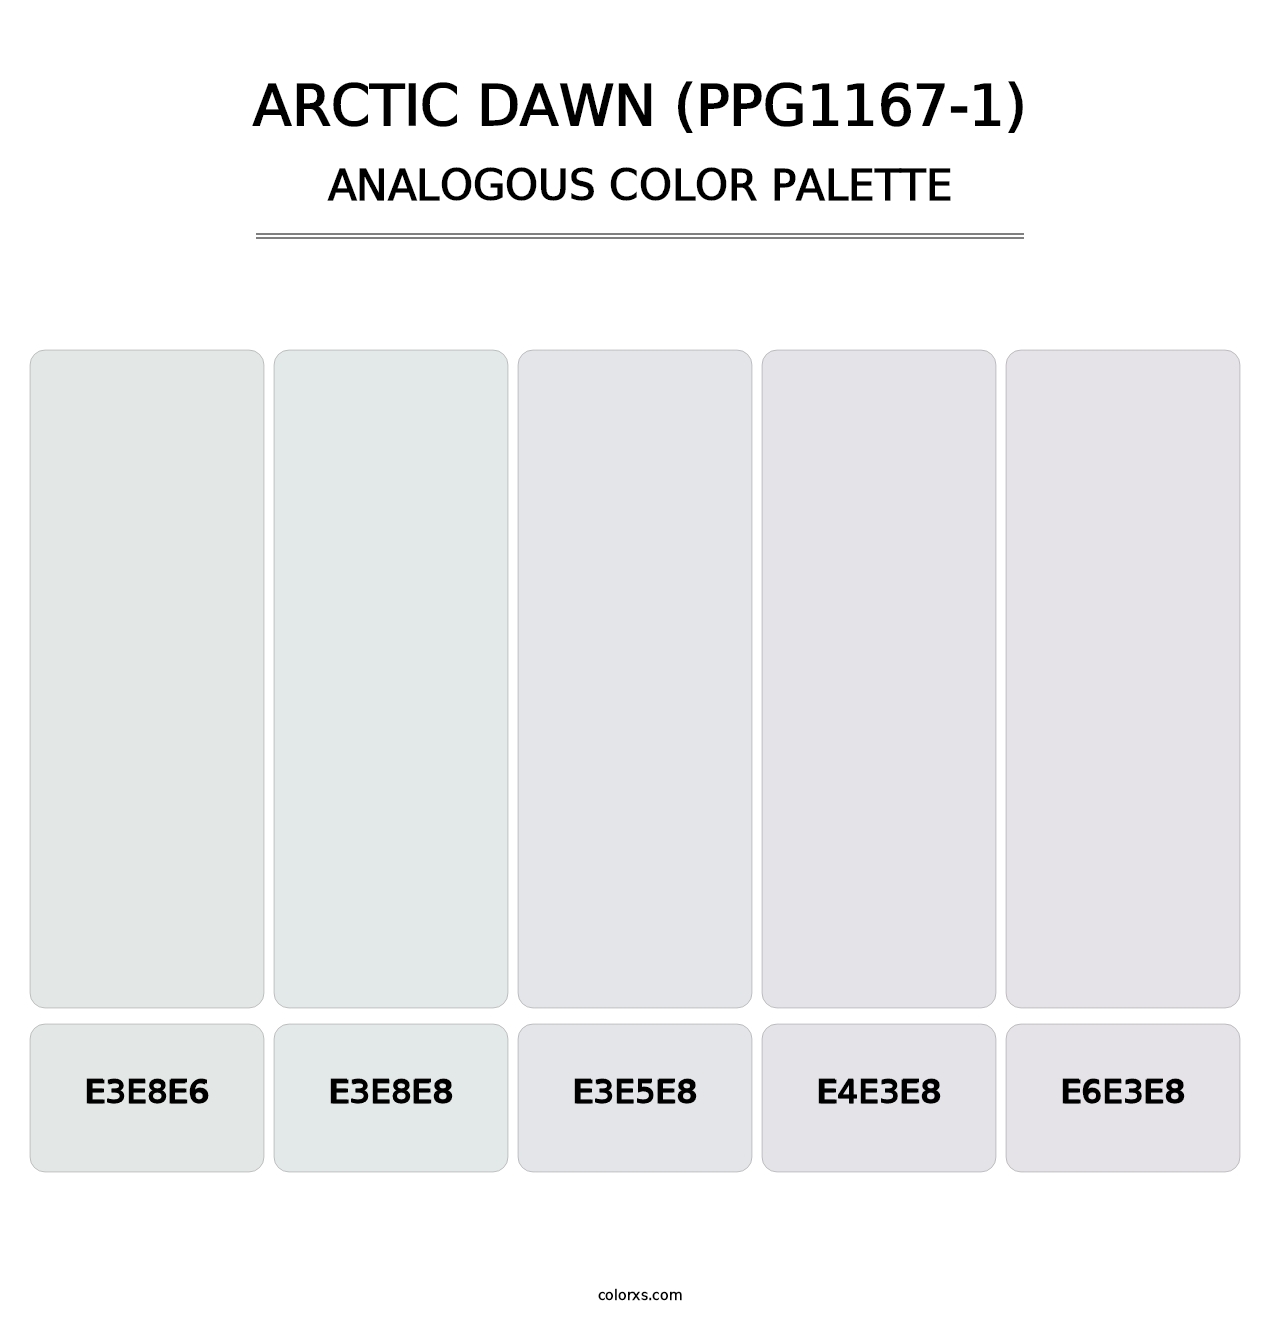 Arctic Dawn (PPG1167-1) - Analogous Color Palette